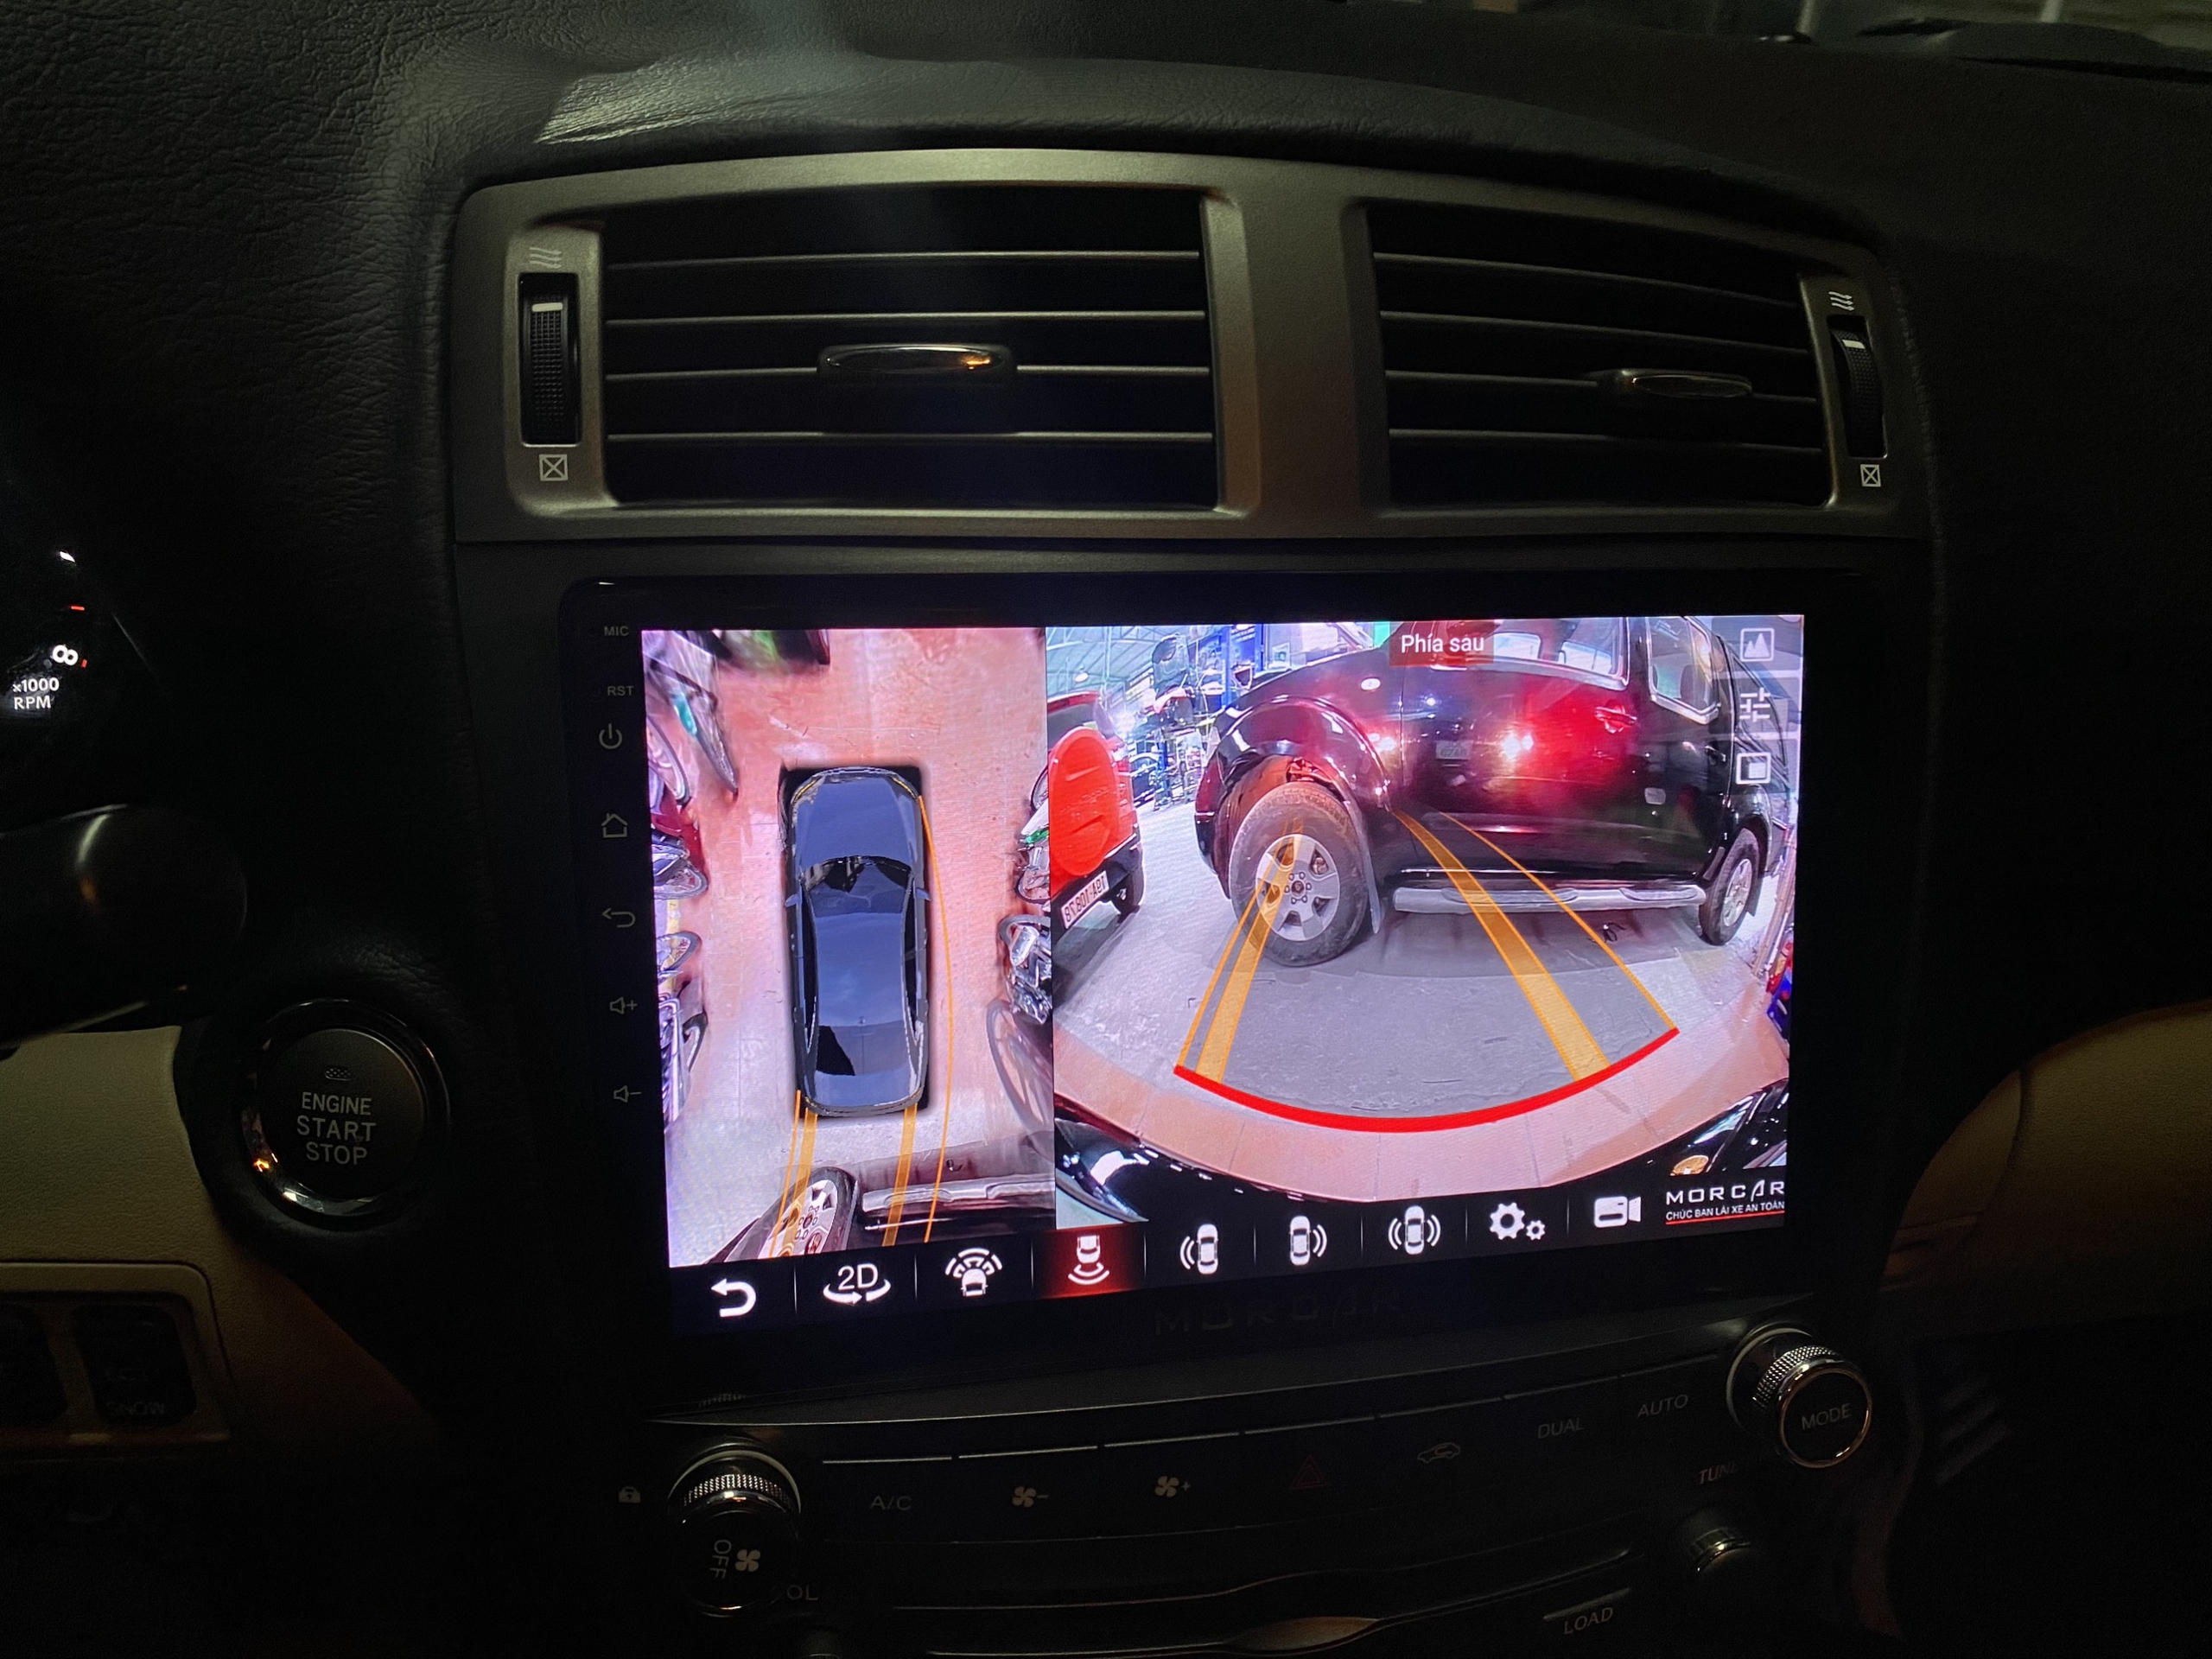 Camera 360 tích hợp màn hình Android cho Lexus IS 2005-2013